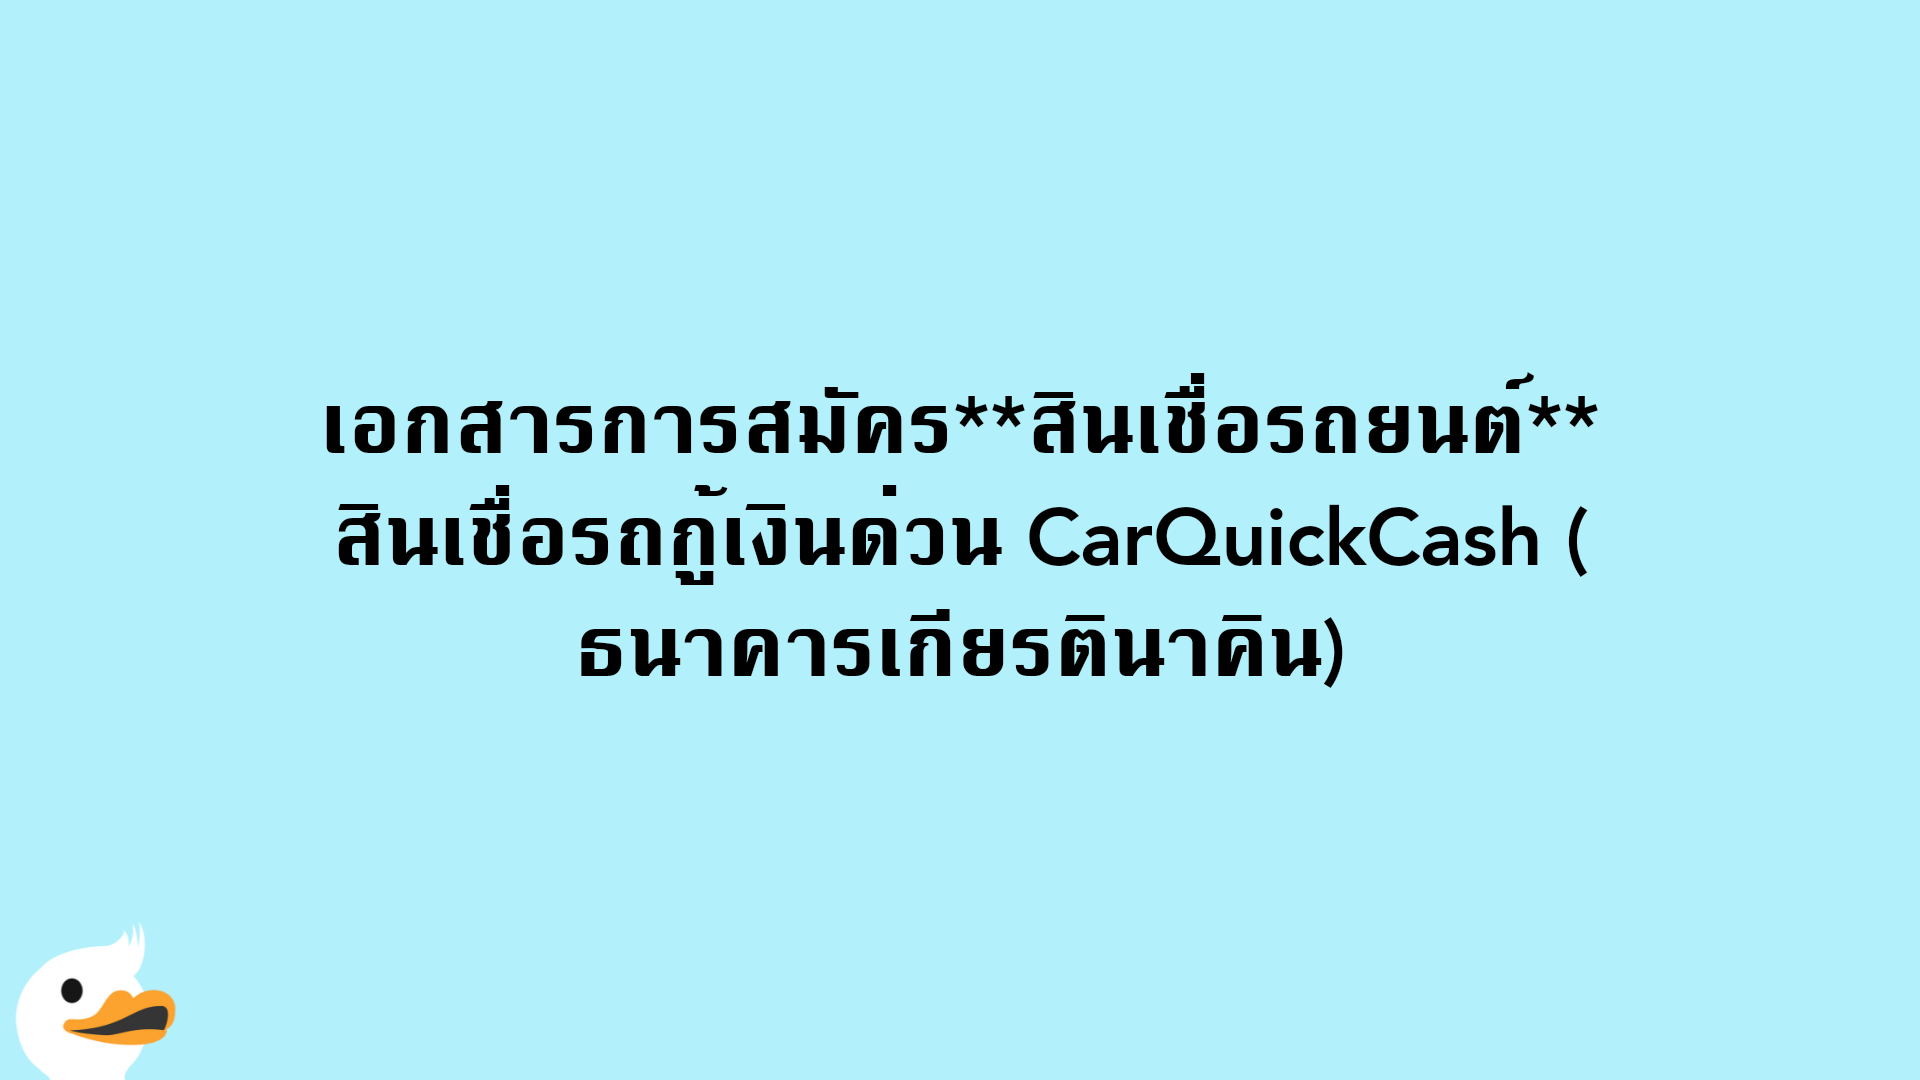 เอกสารการสมัครสินเชื่อรถยนต์ สินเชื่อรถกู้เงินด่วน CarQuickCash (ธนาคารเกียรตินาคิน)